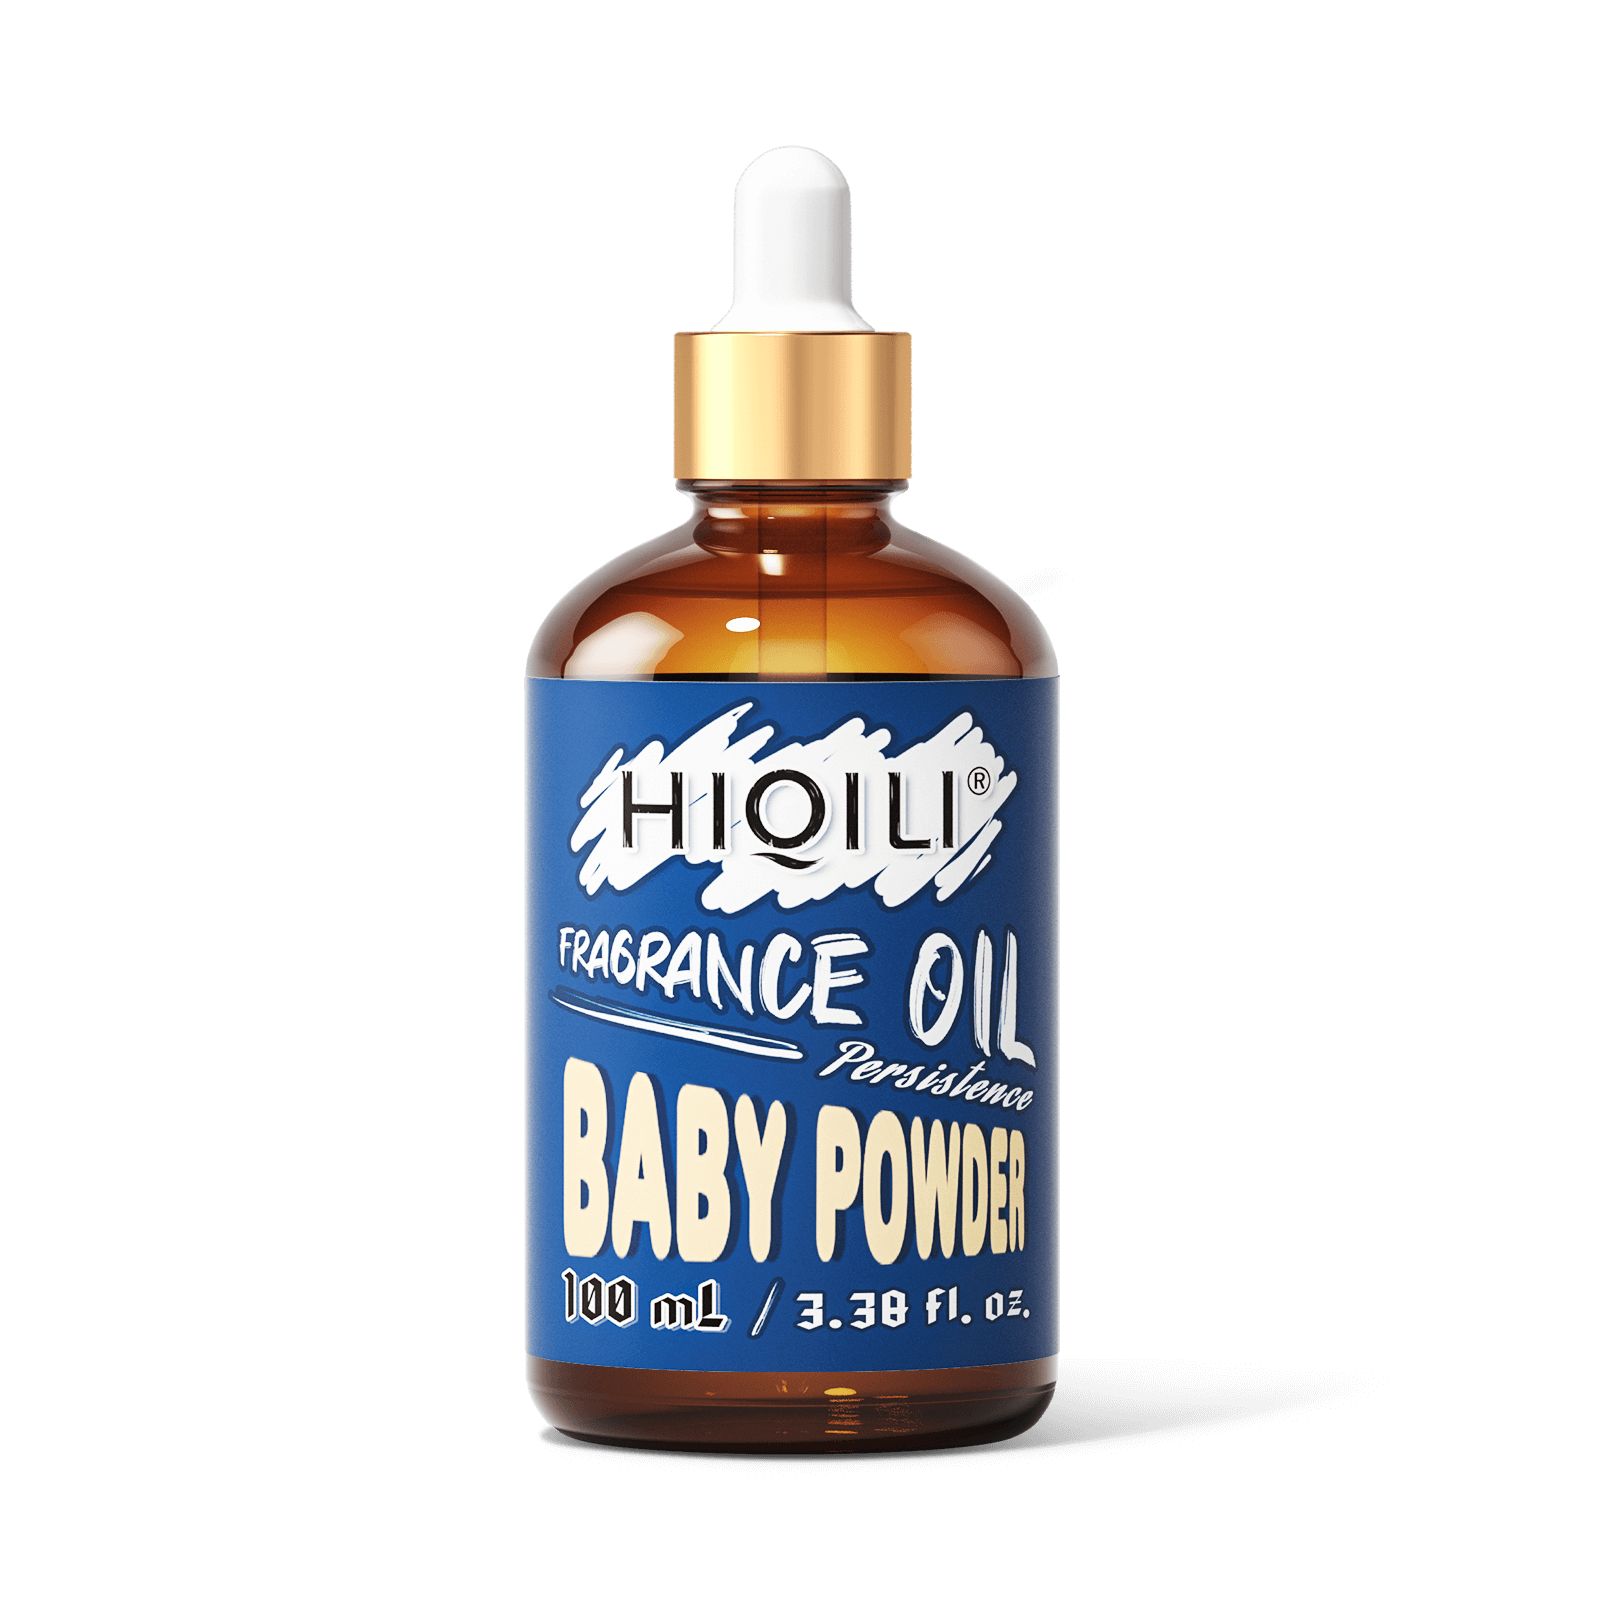 Babypowder Fragrance Oil